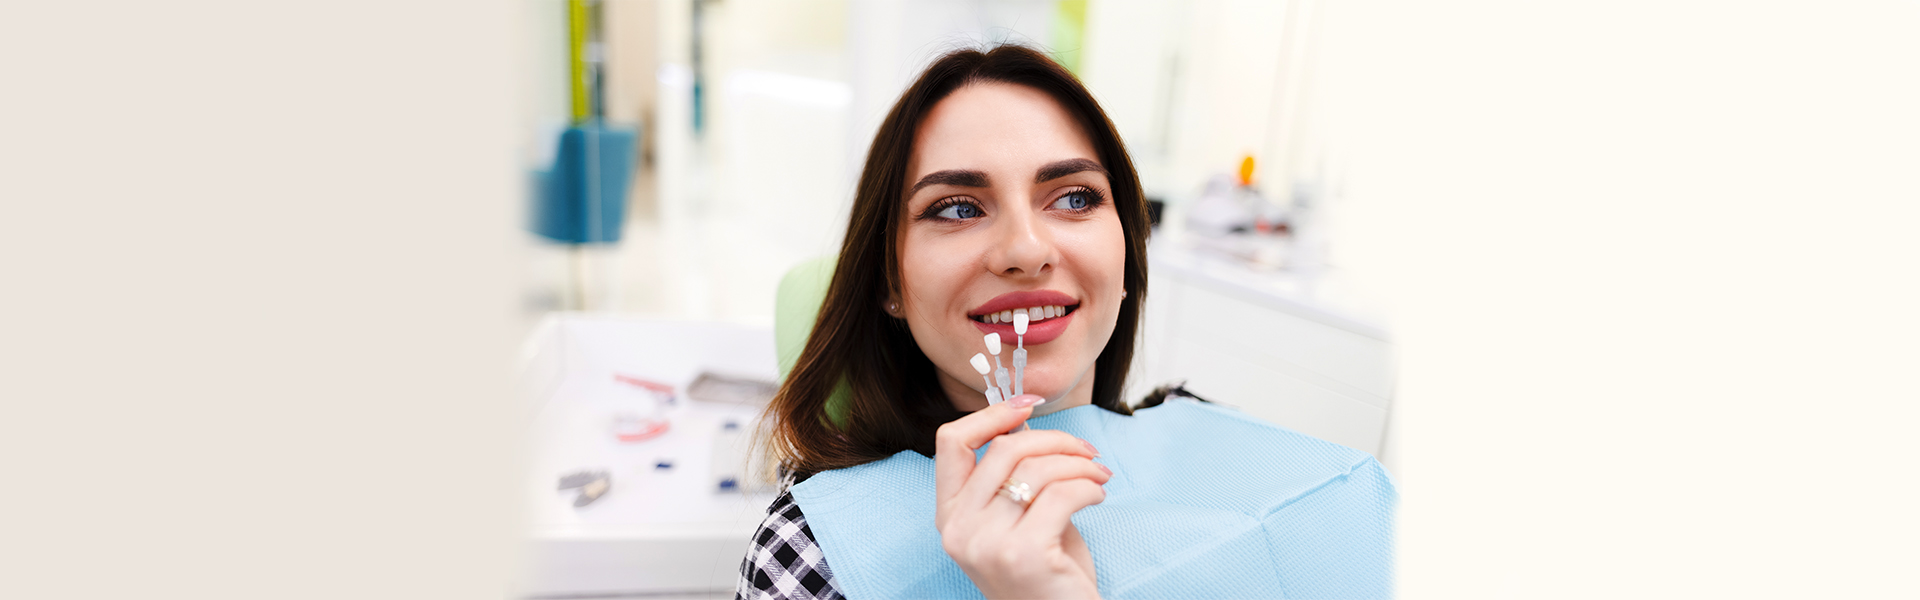 Dental Veneers vs. Crown: the Benefits and Downsides of Both